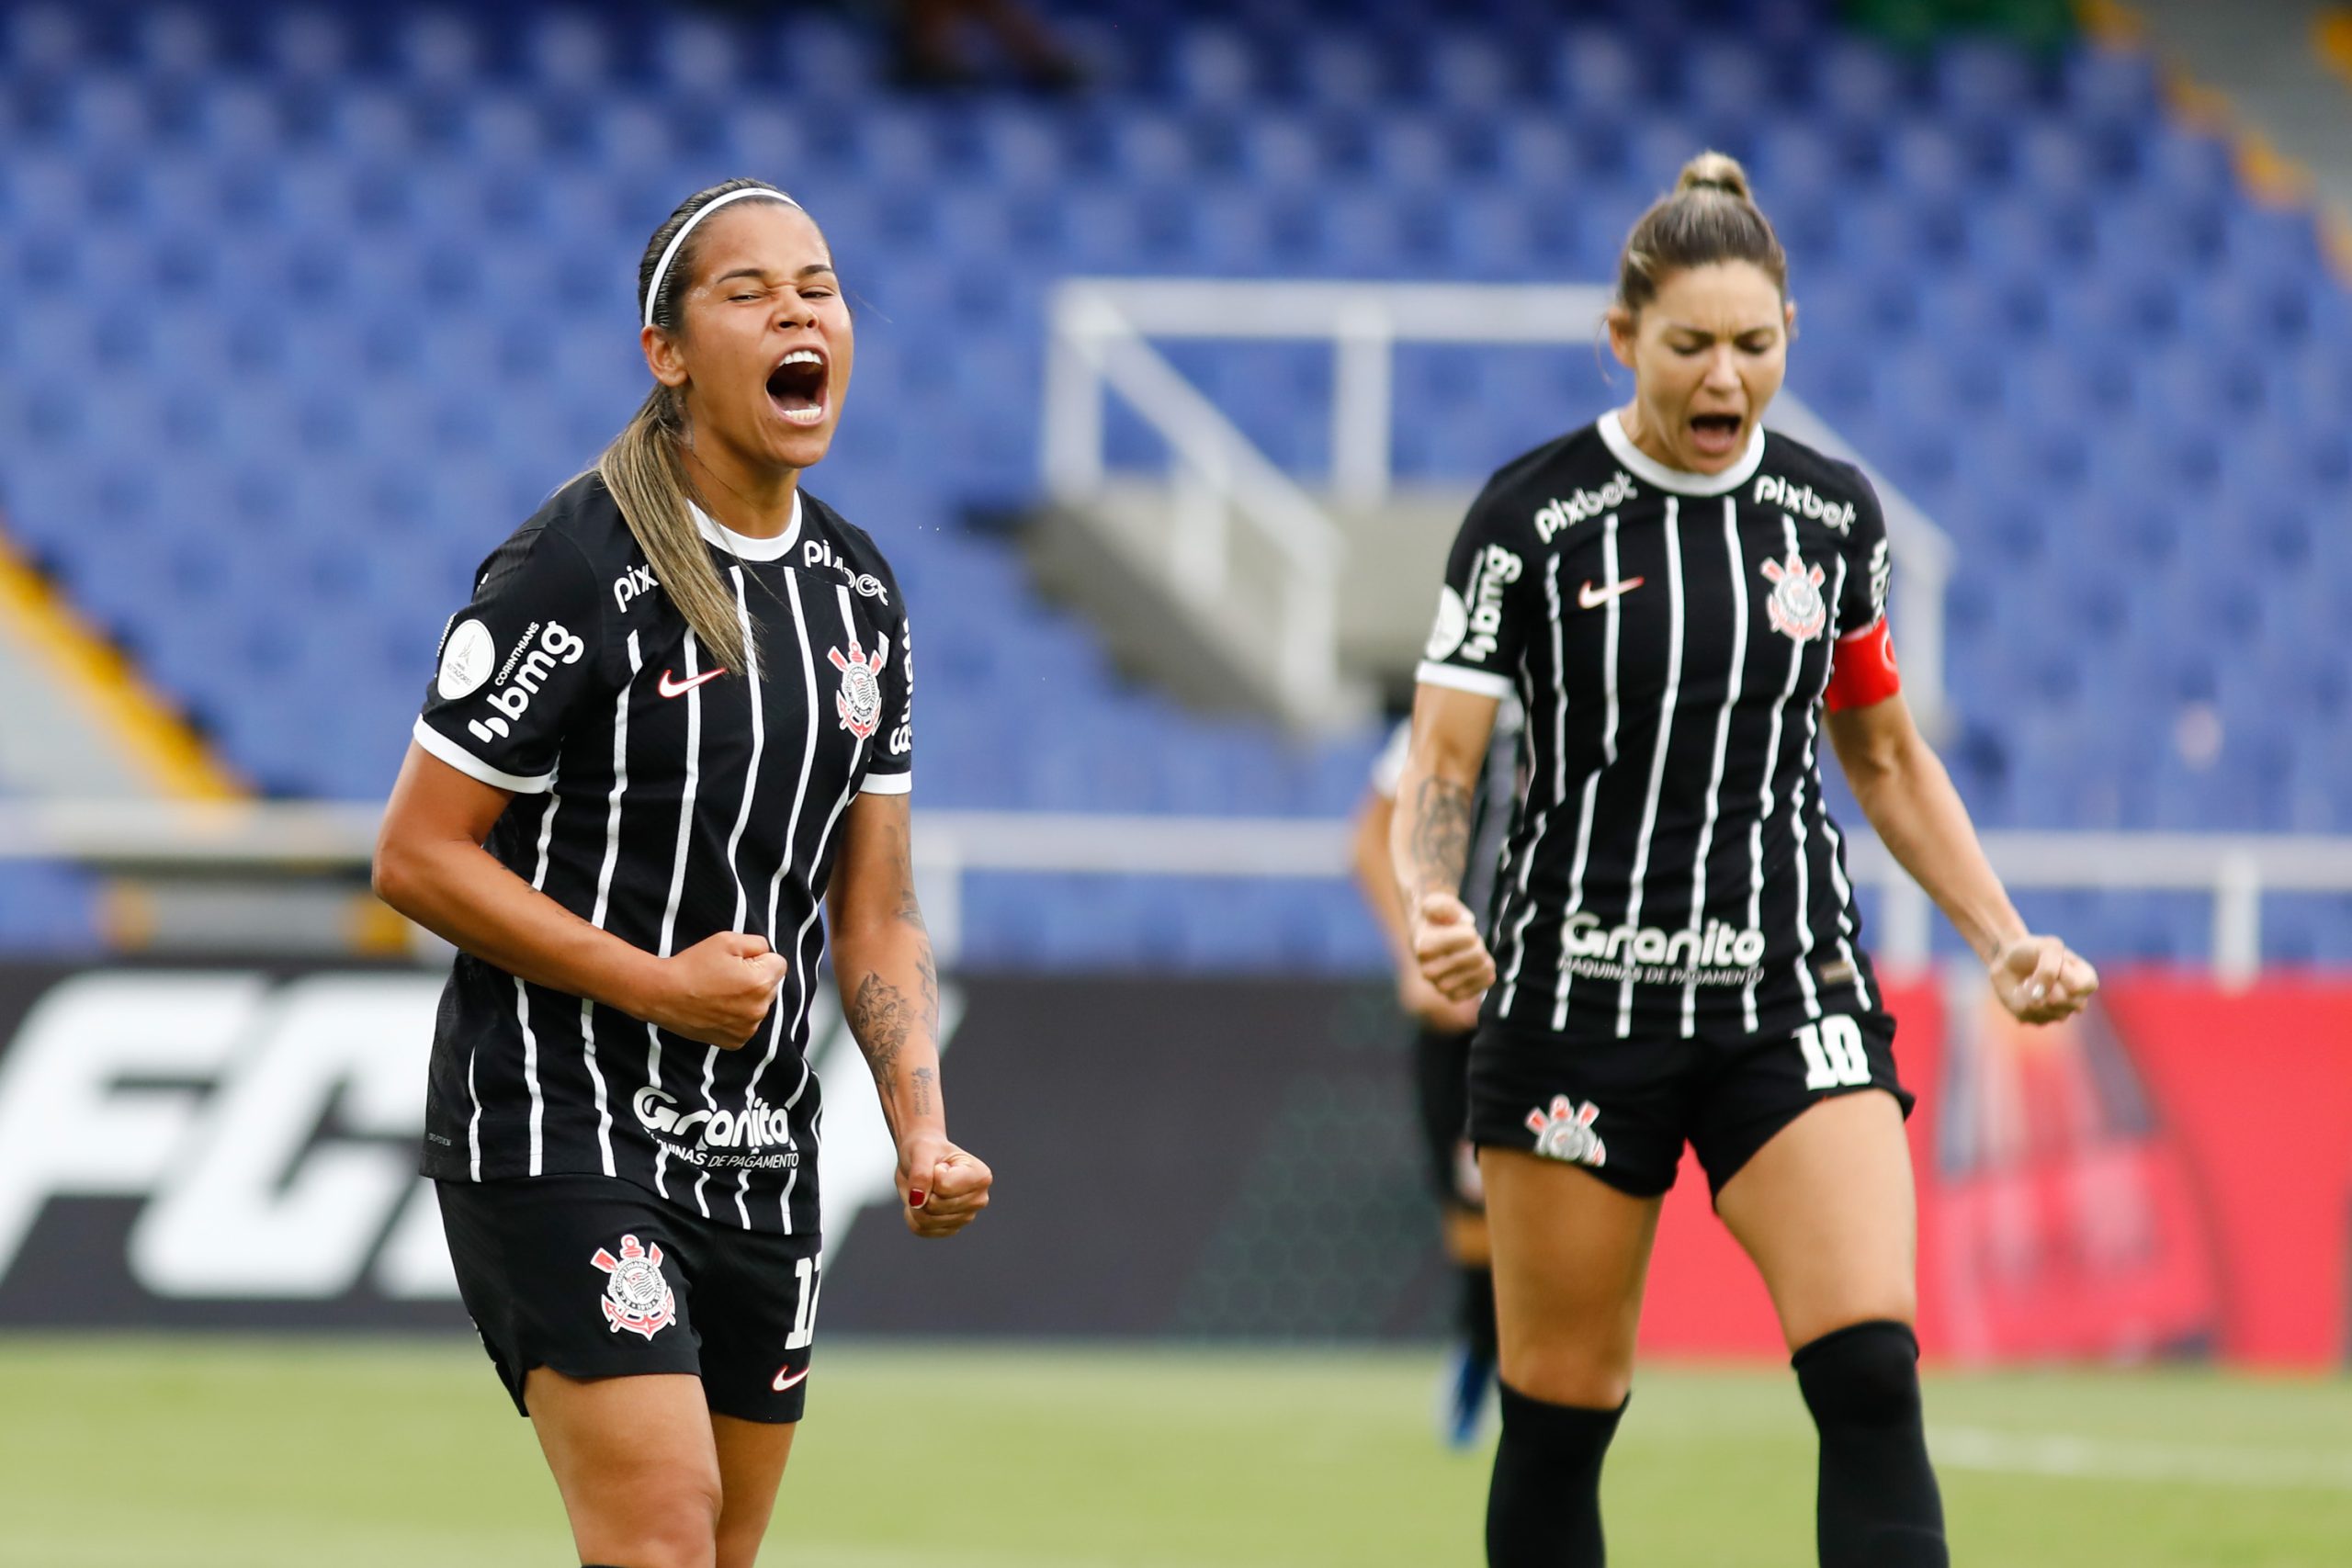 Corinthians faz goleada histórica contra o Palmeiras e vai à final do Paulista  feminino - Esportes - R7 Futebol